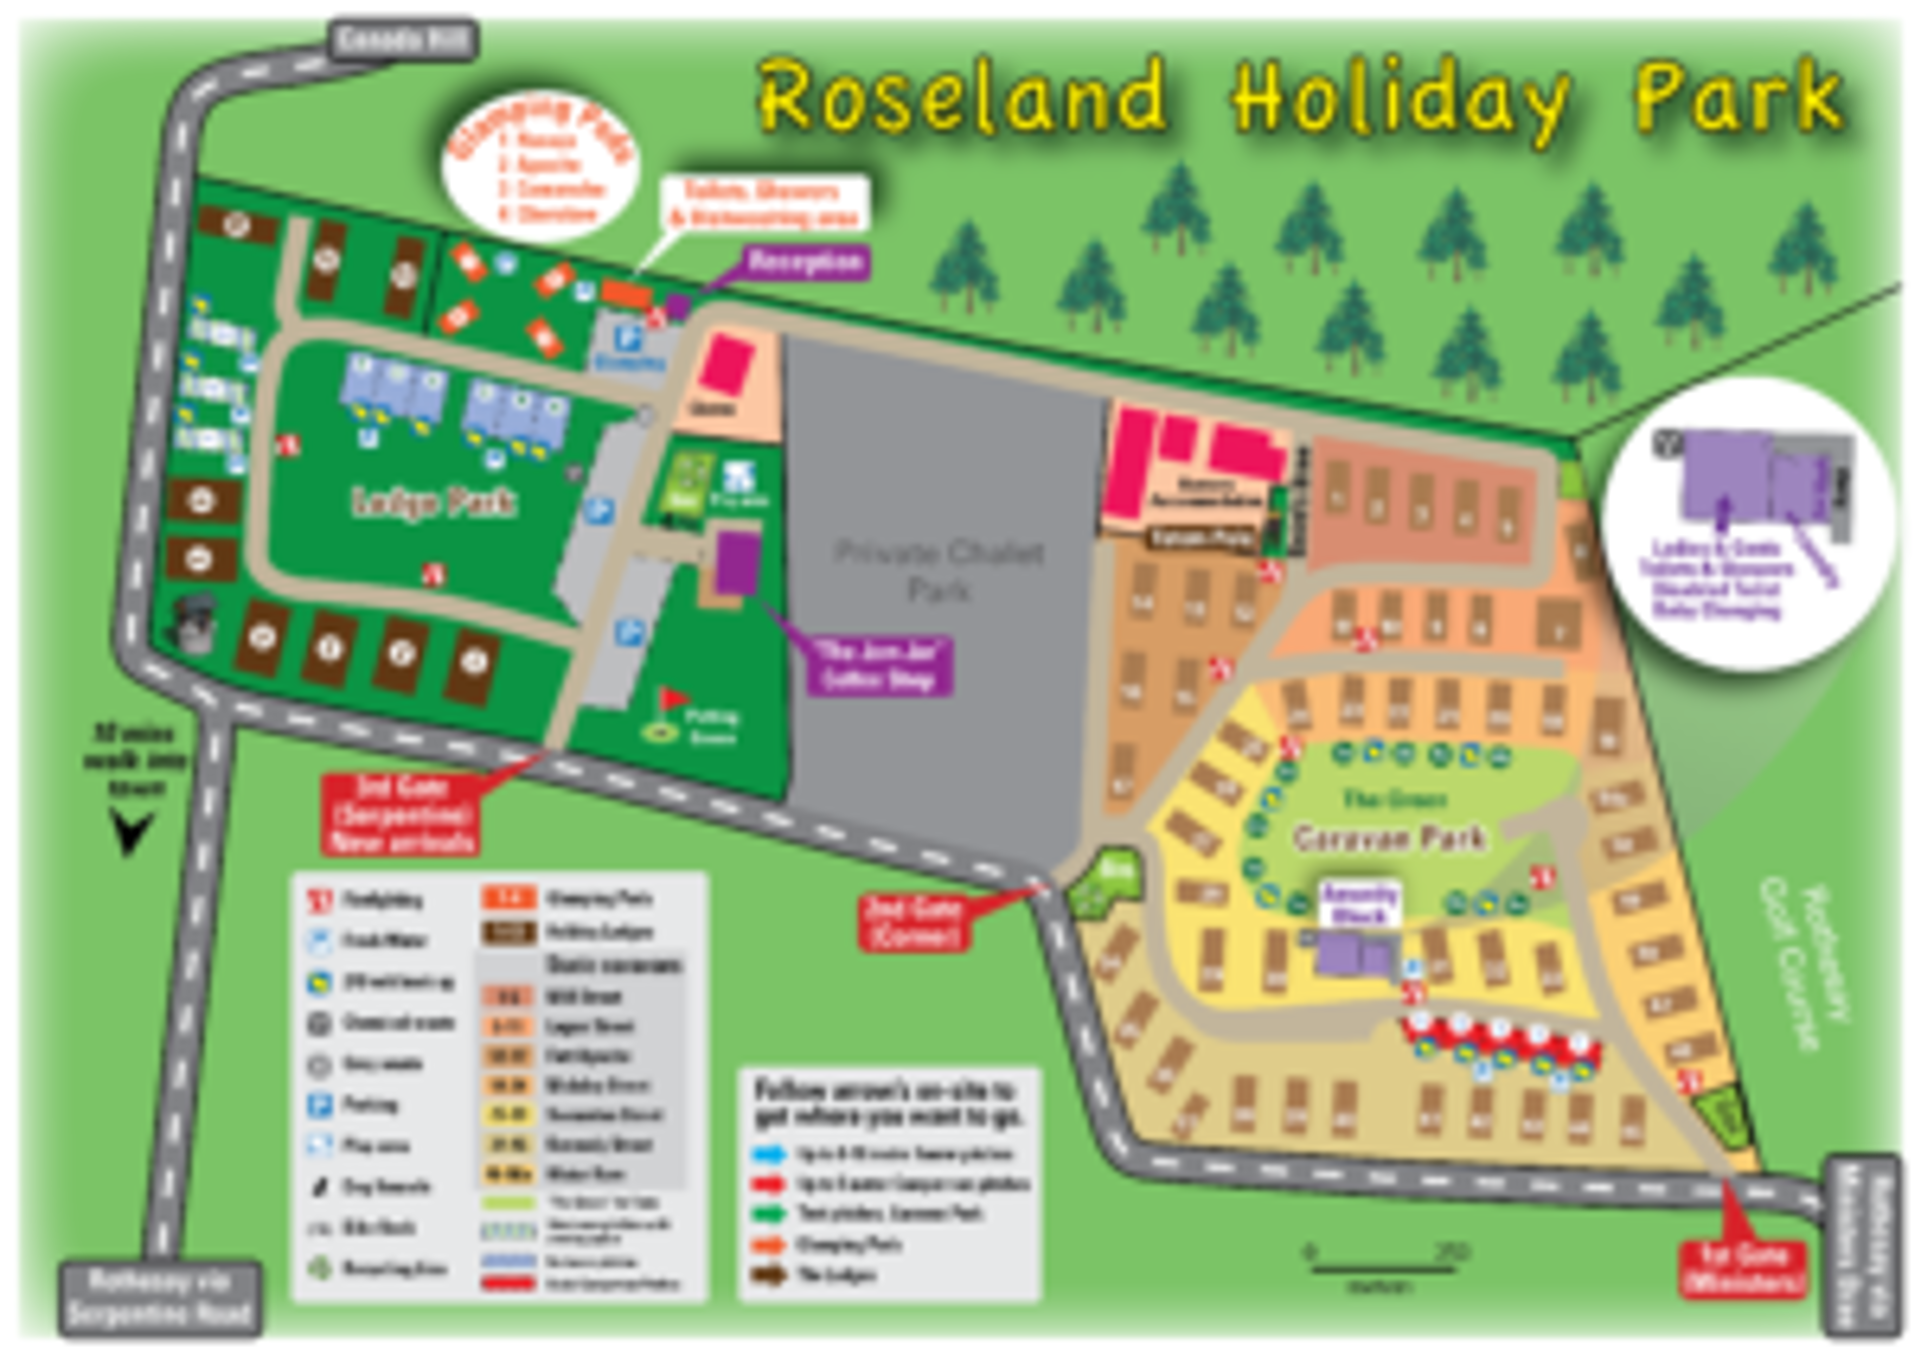 Background image - Roseland Holiday Park